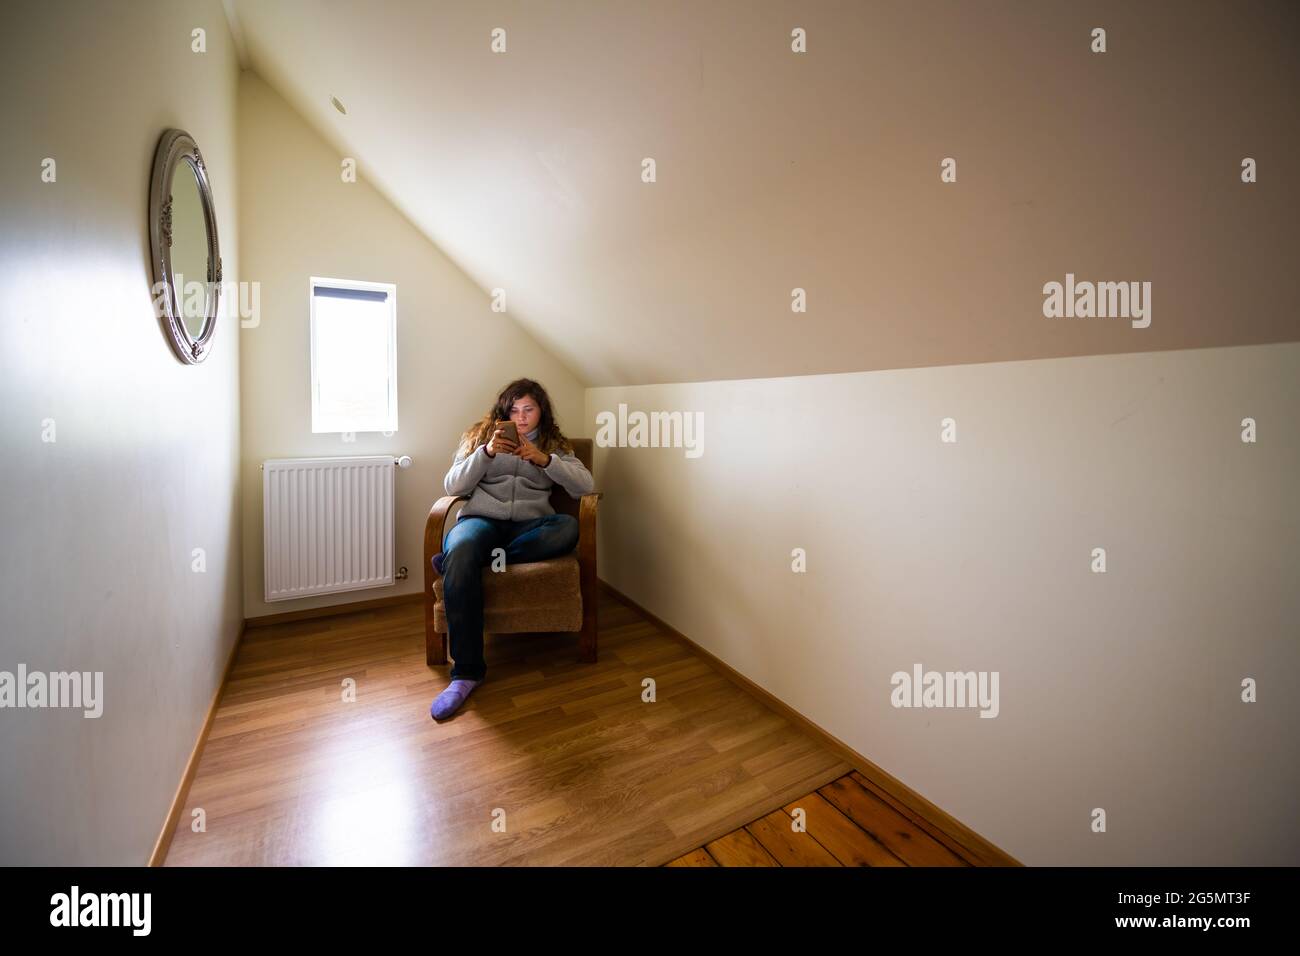 Europäische Loft-Zimmer Schlafzimmer im Gästehaus mit Frau am Fenster am Telefon in Haus Innenhaus Wohnung im Hostel Hotel sitzen Stockfoto